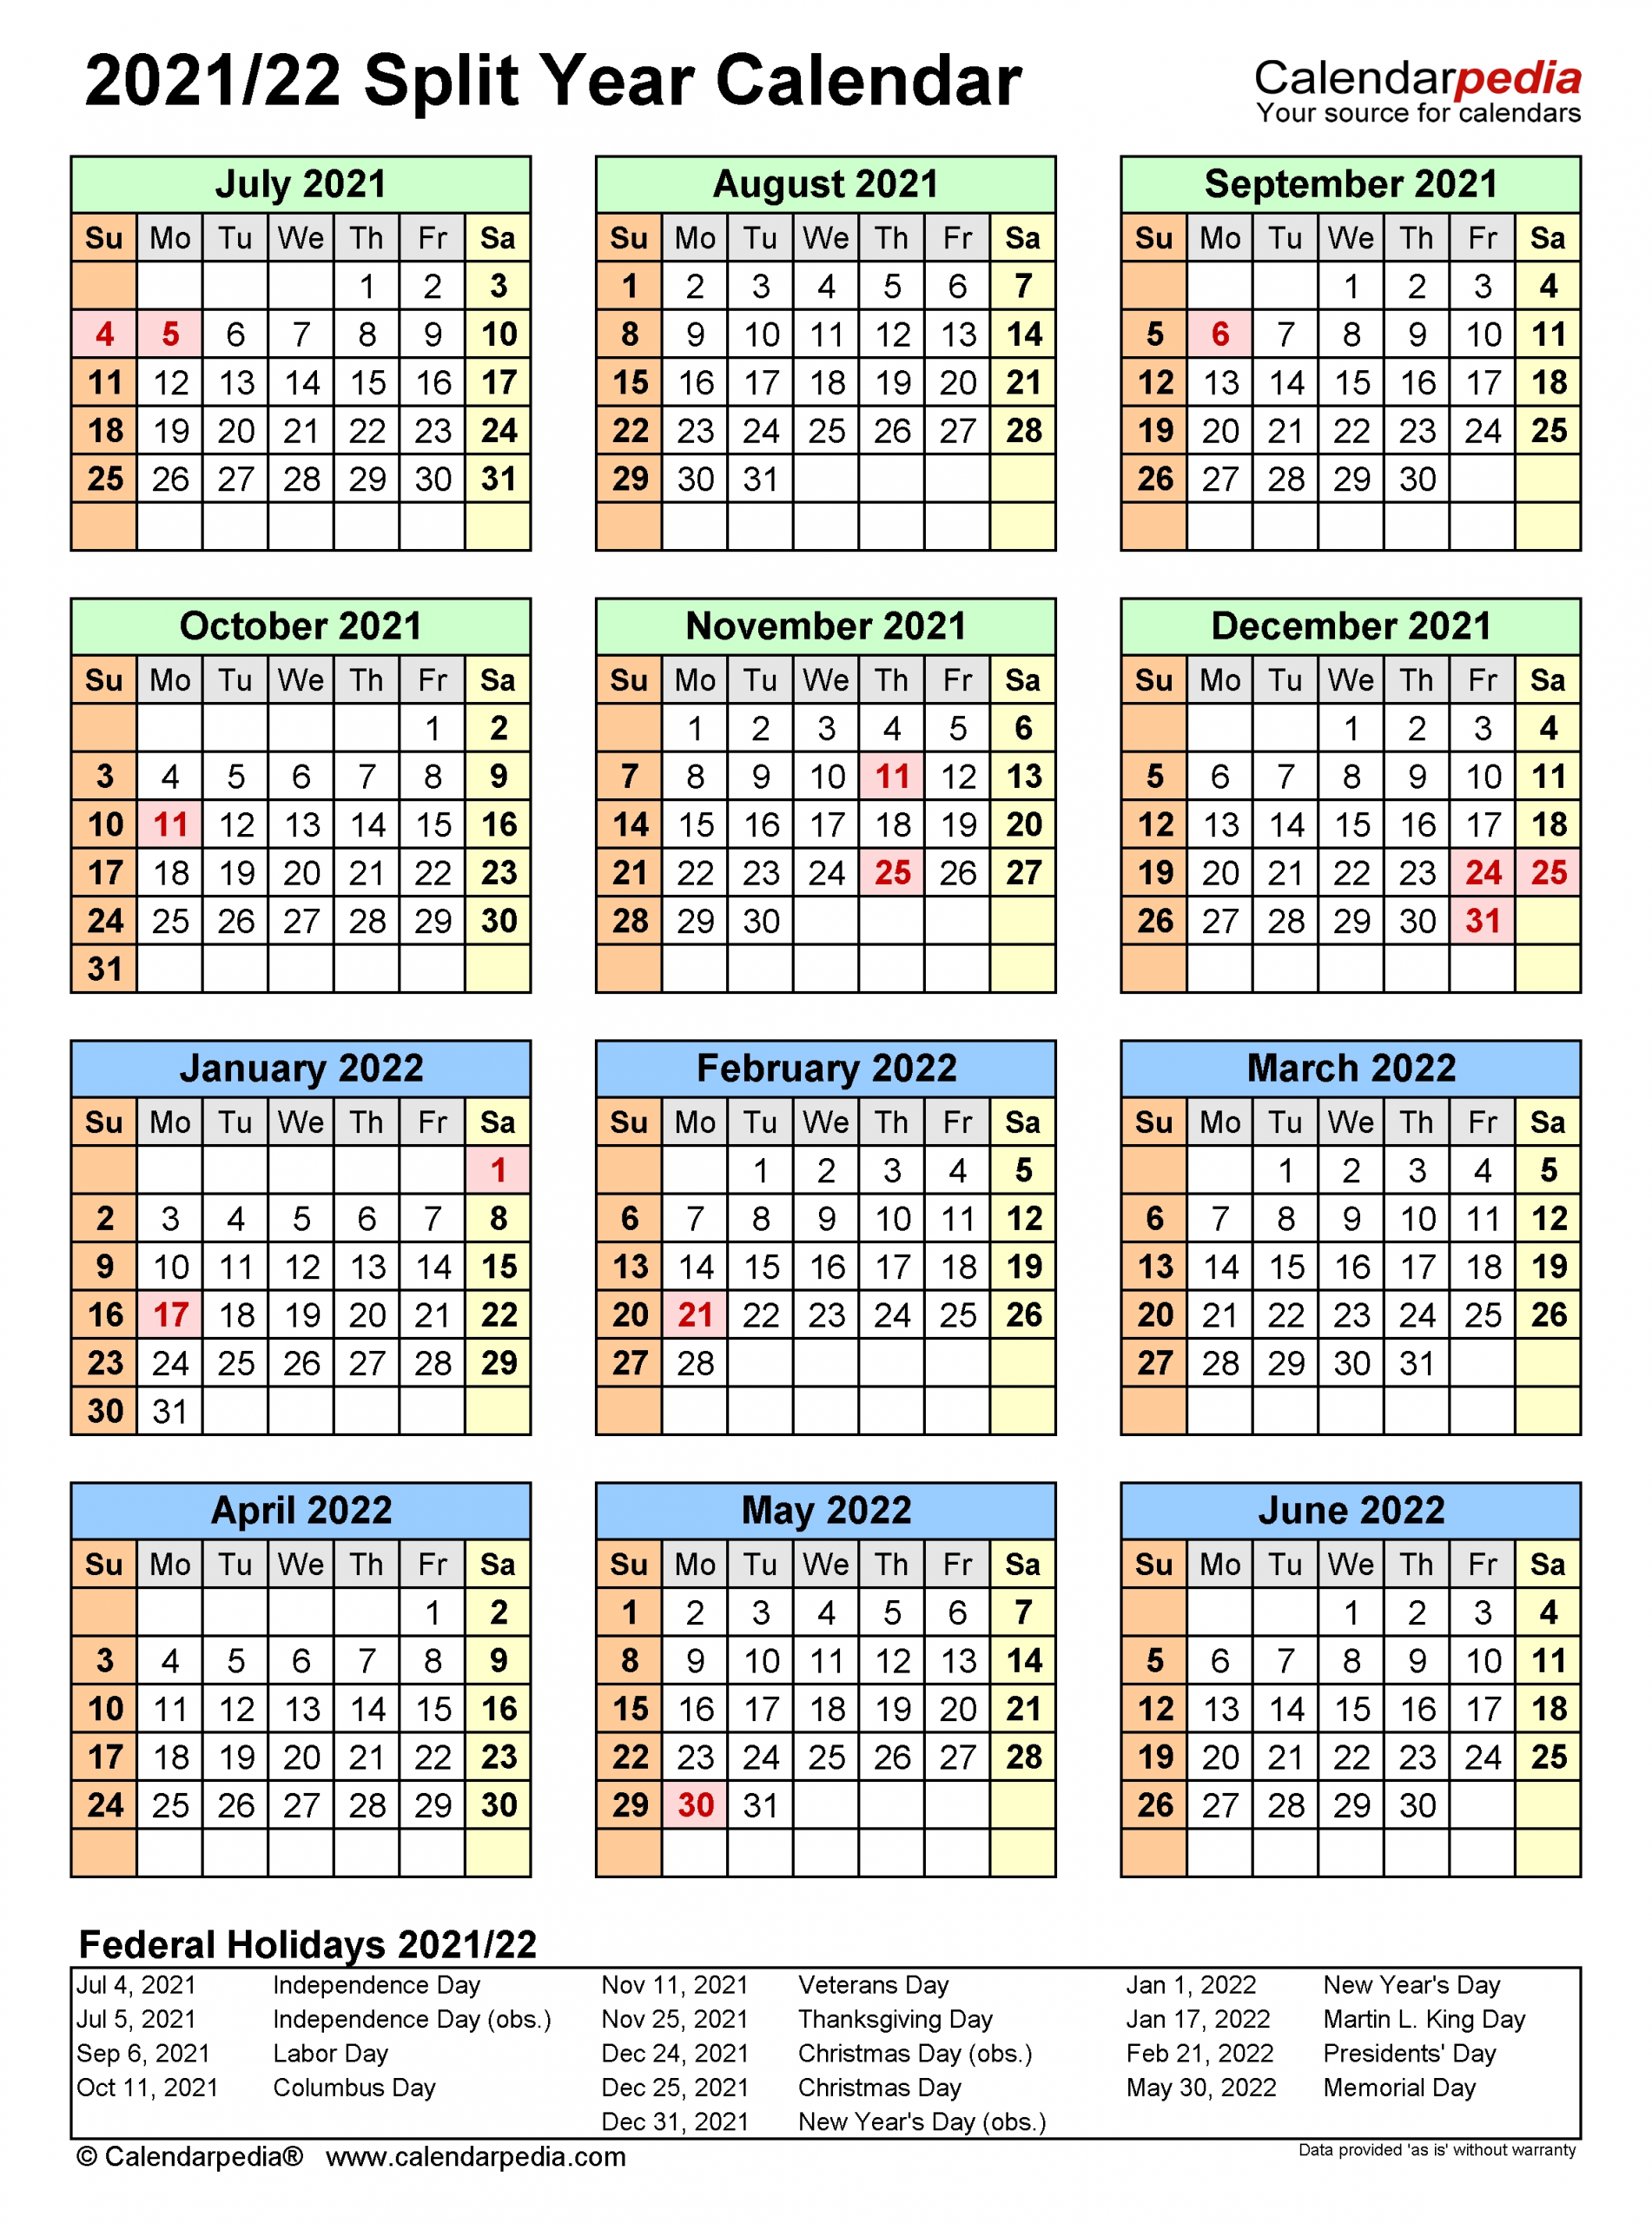 Get Calendar Of August Through October 2021